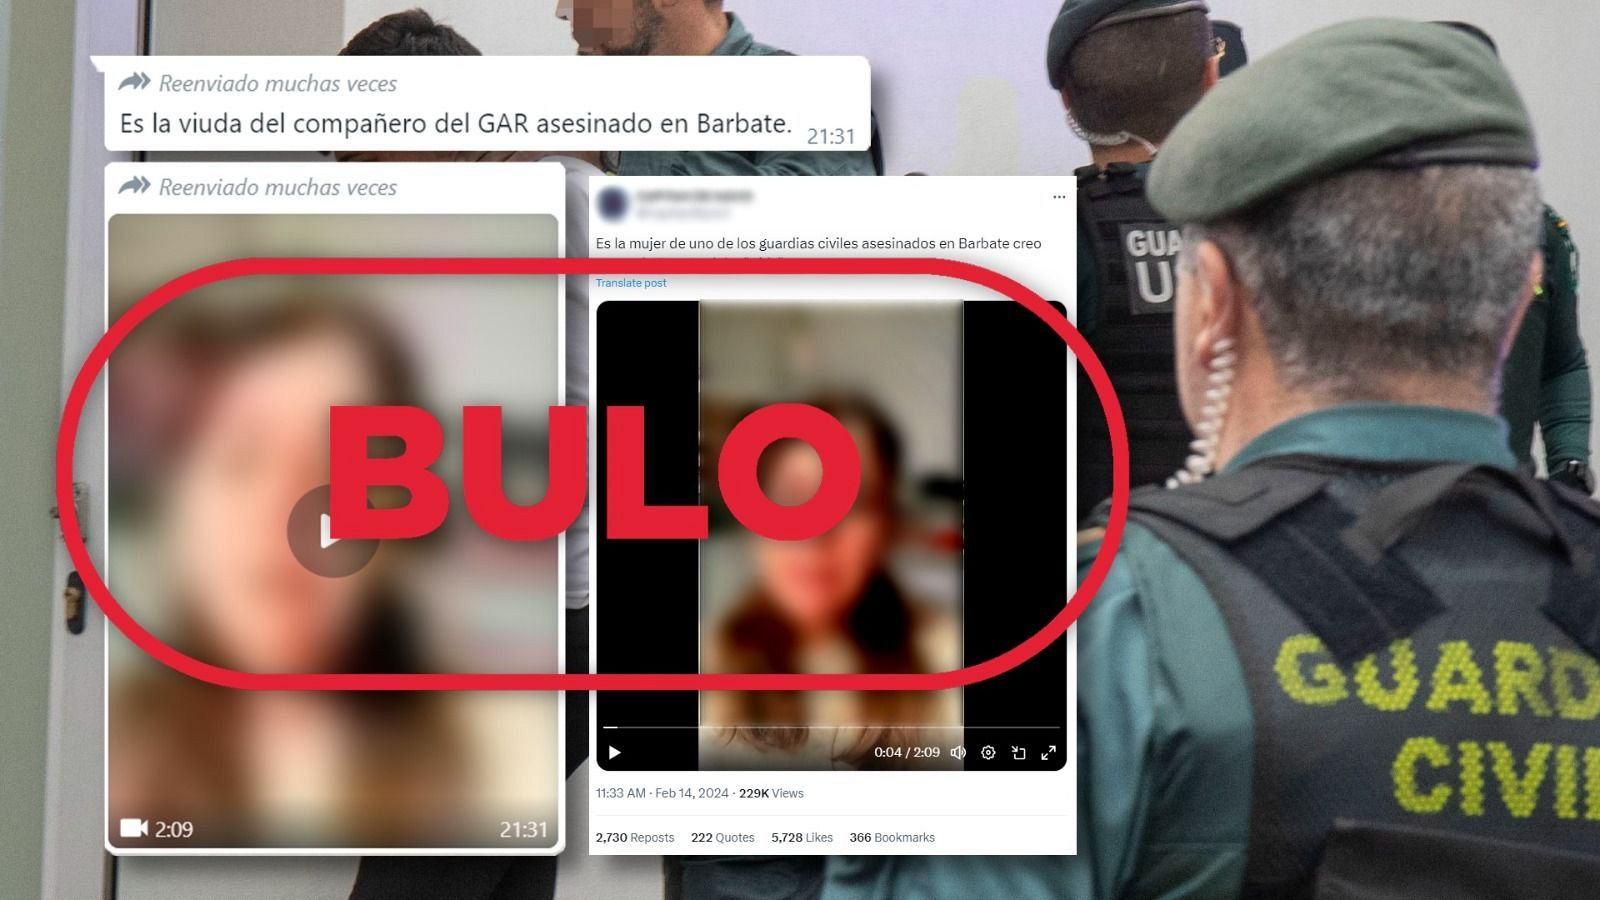 Guardias civiles asesinados en Barbate: la mujer de este vídeo no es la viuda de ninguno de ellos, con sello bulo en rojo